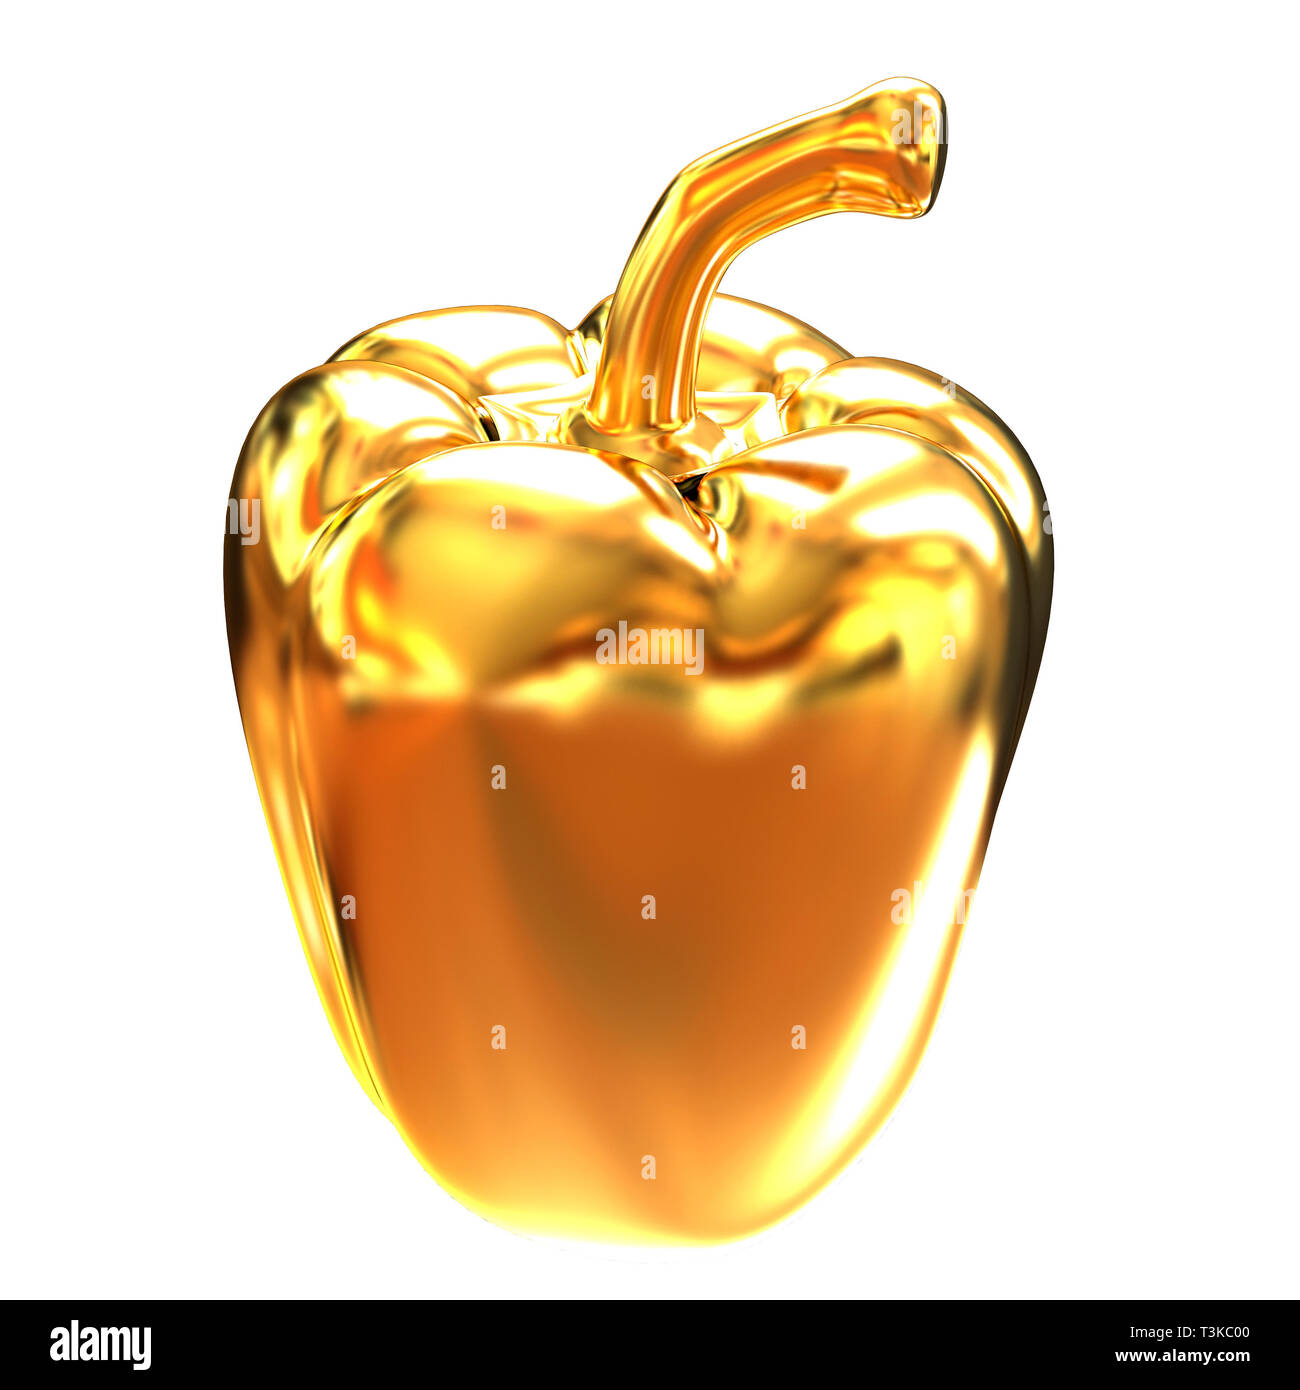 Gold bulgarian pepper. 3d illustration Stock Photo